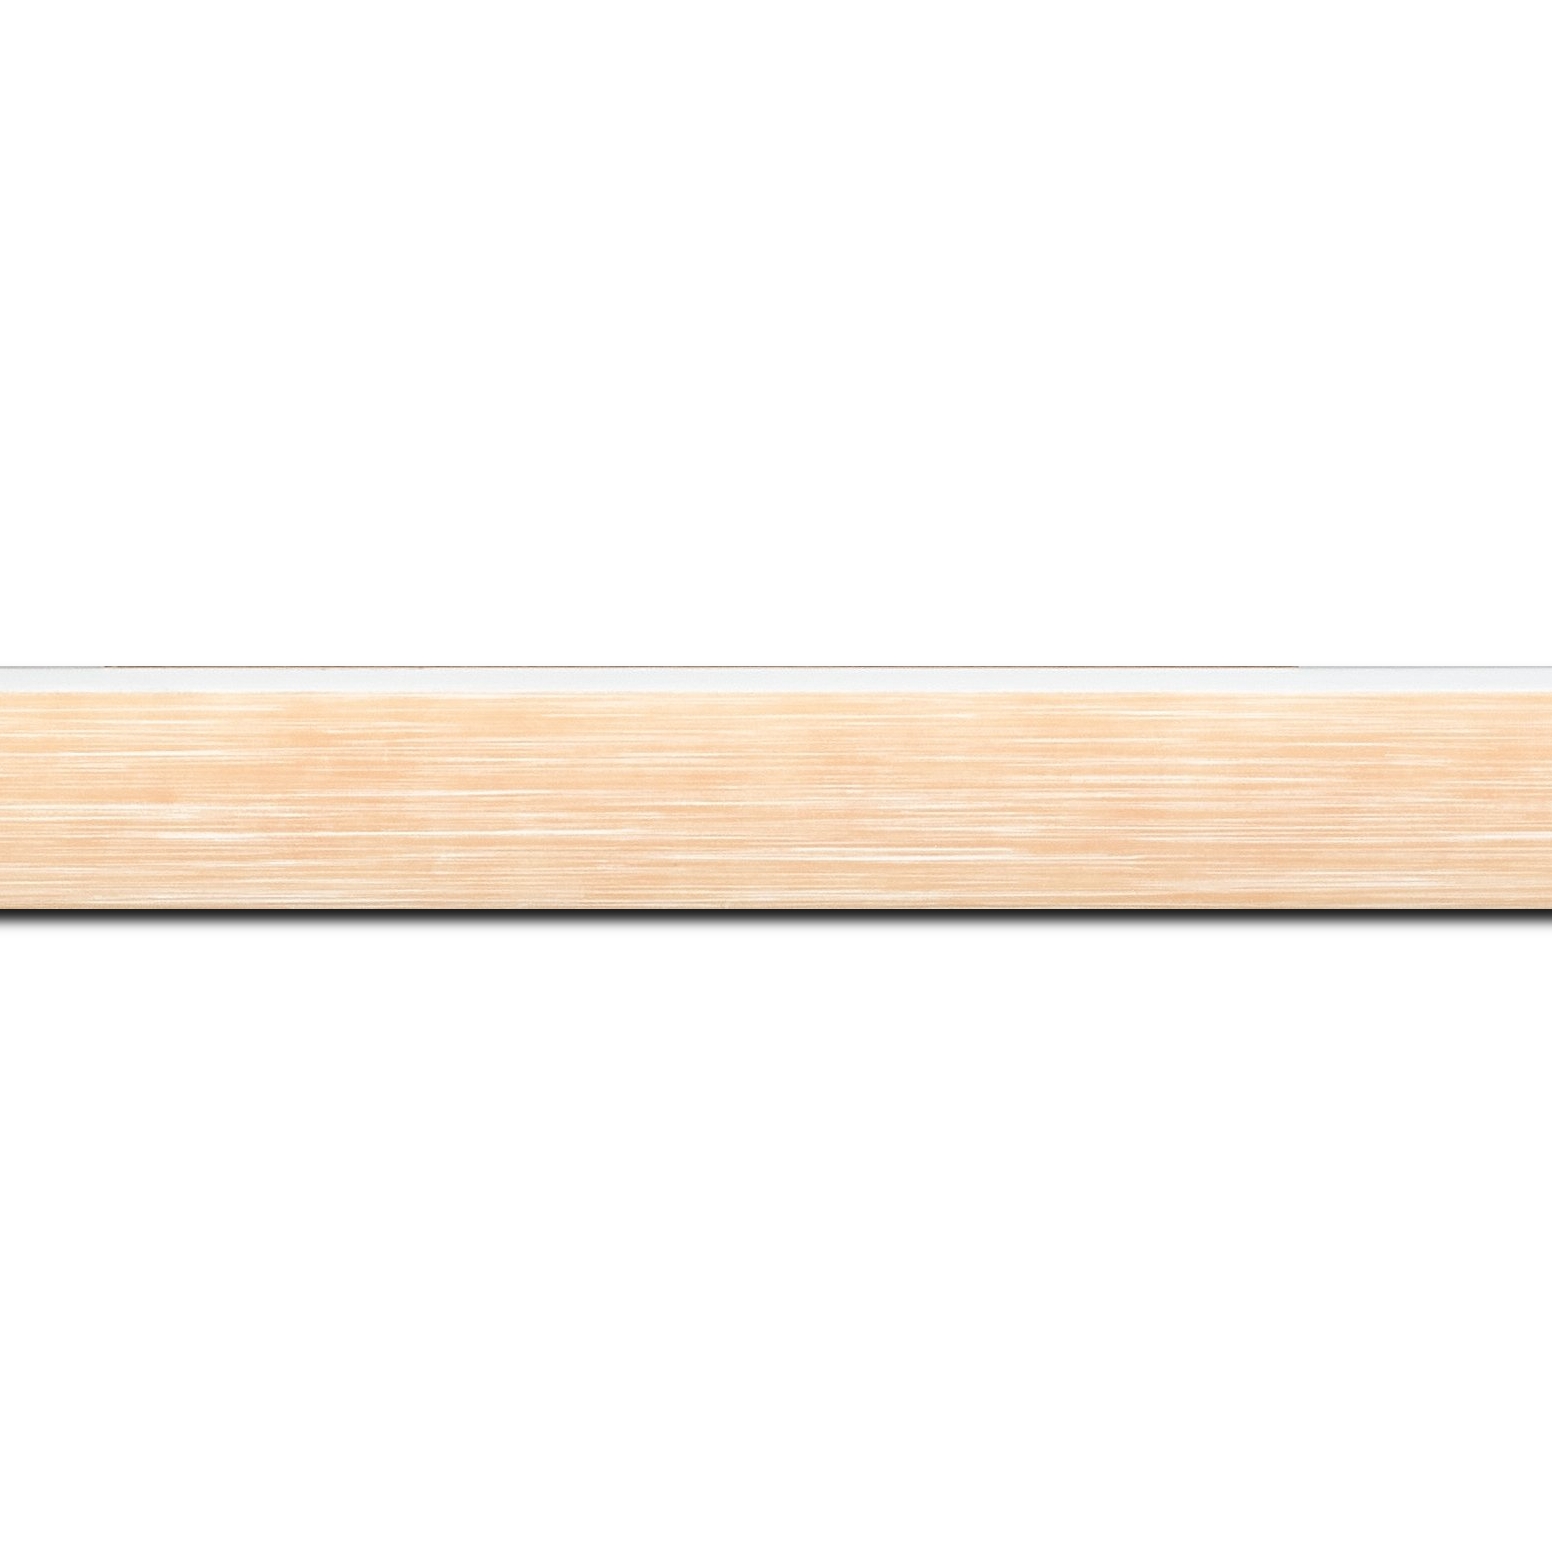 Pack par 12m, bois profil arrondi en pente plongeant largeur 2.4cm couleur orange saumon tendre, arête et chant extérieur du cadre blanc   (longueur baguette pouvant varier entre 2.40m et 3m selon arrivage des bois)